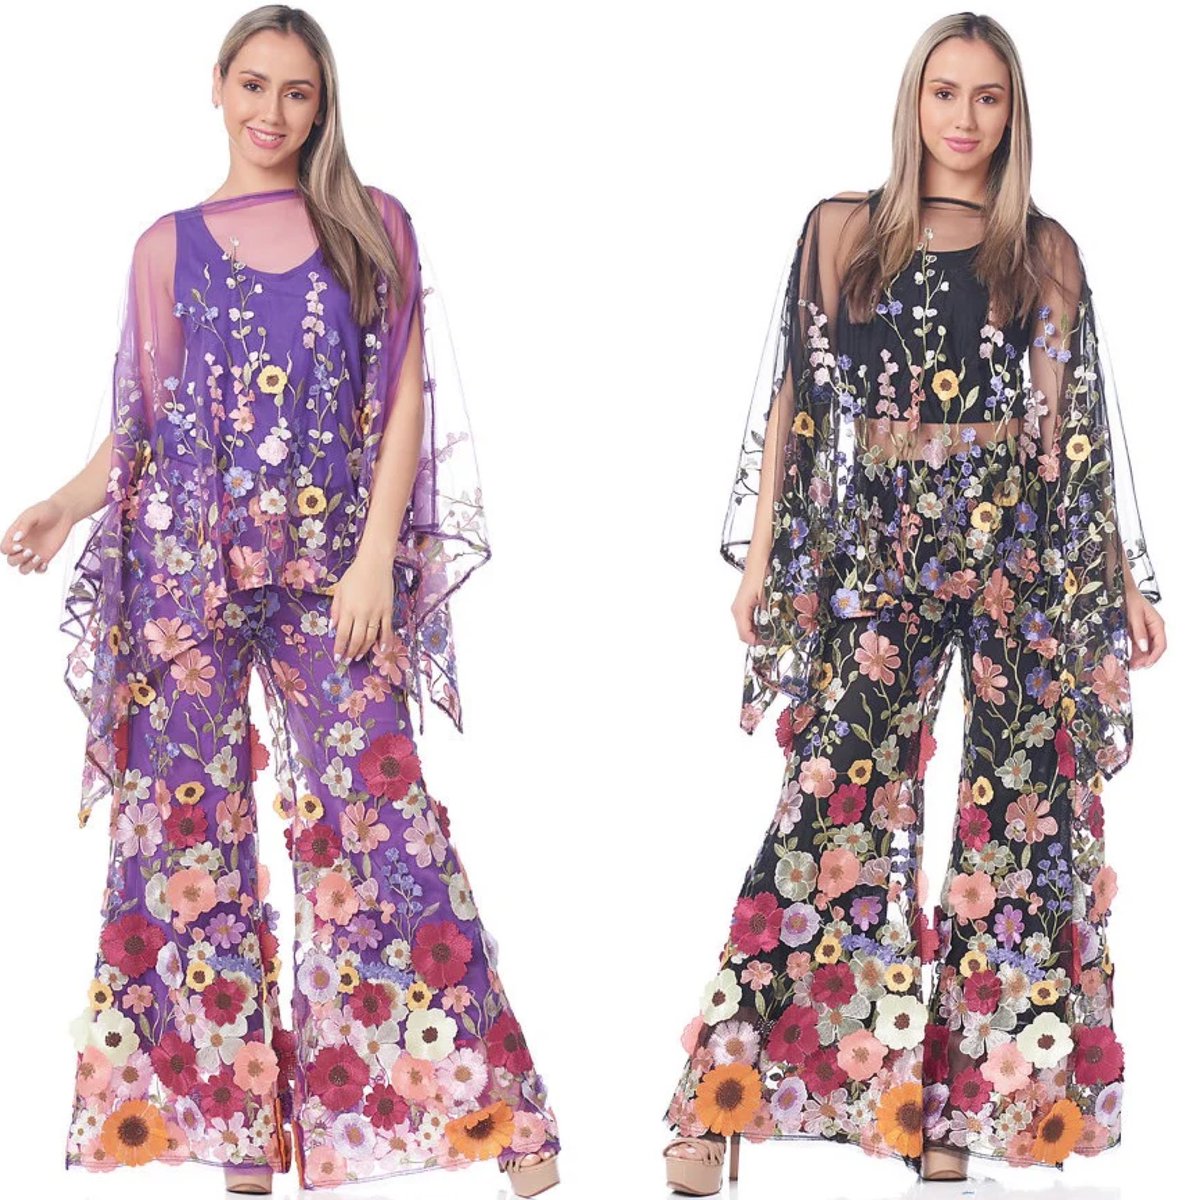 Mesh Floral Scarf Pant Suit 
divasdenfashion.com/products/mesh-…  

#DivasDenFashion #blackpant #purplepant #palazzopant #curvygirlsrock #pantsuit #scarf #floral #floralscarf #petitestyle #petitegirls #casualfashion #executivefashion #petitegirlsrock #mesh #meshpalazzopant #petitefashion